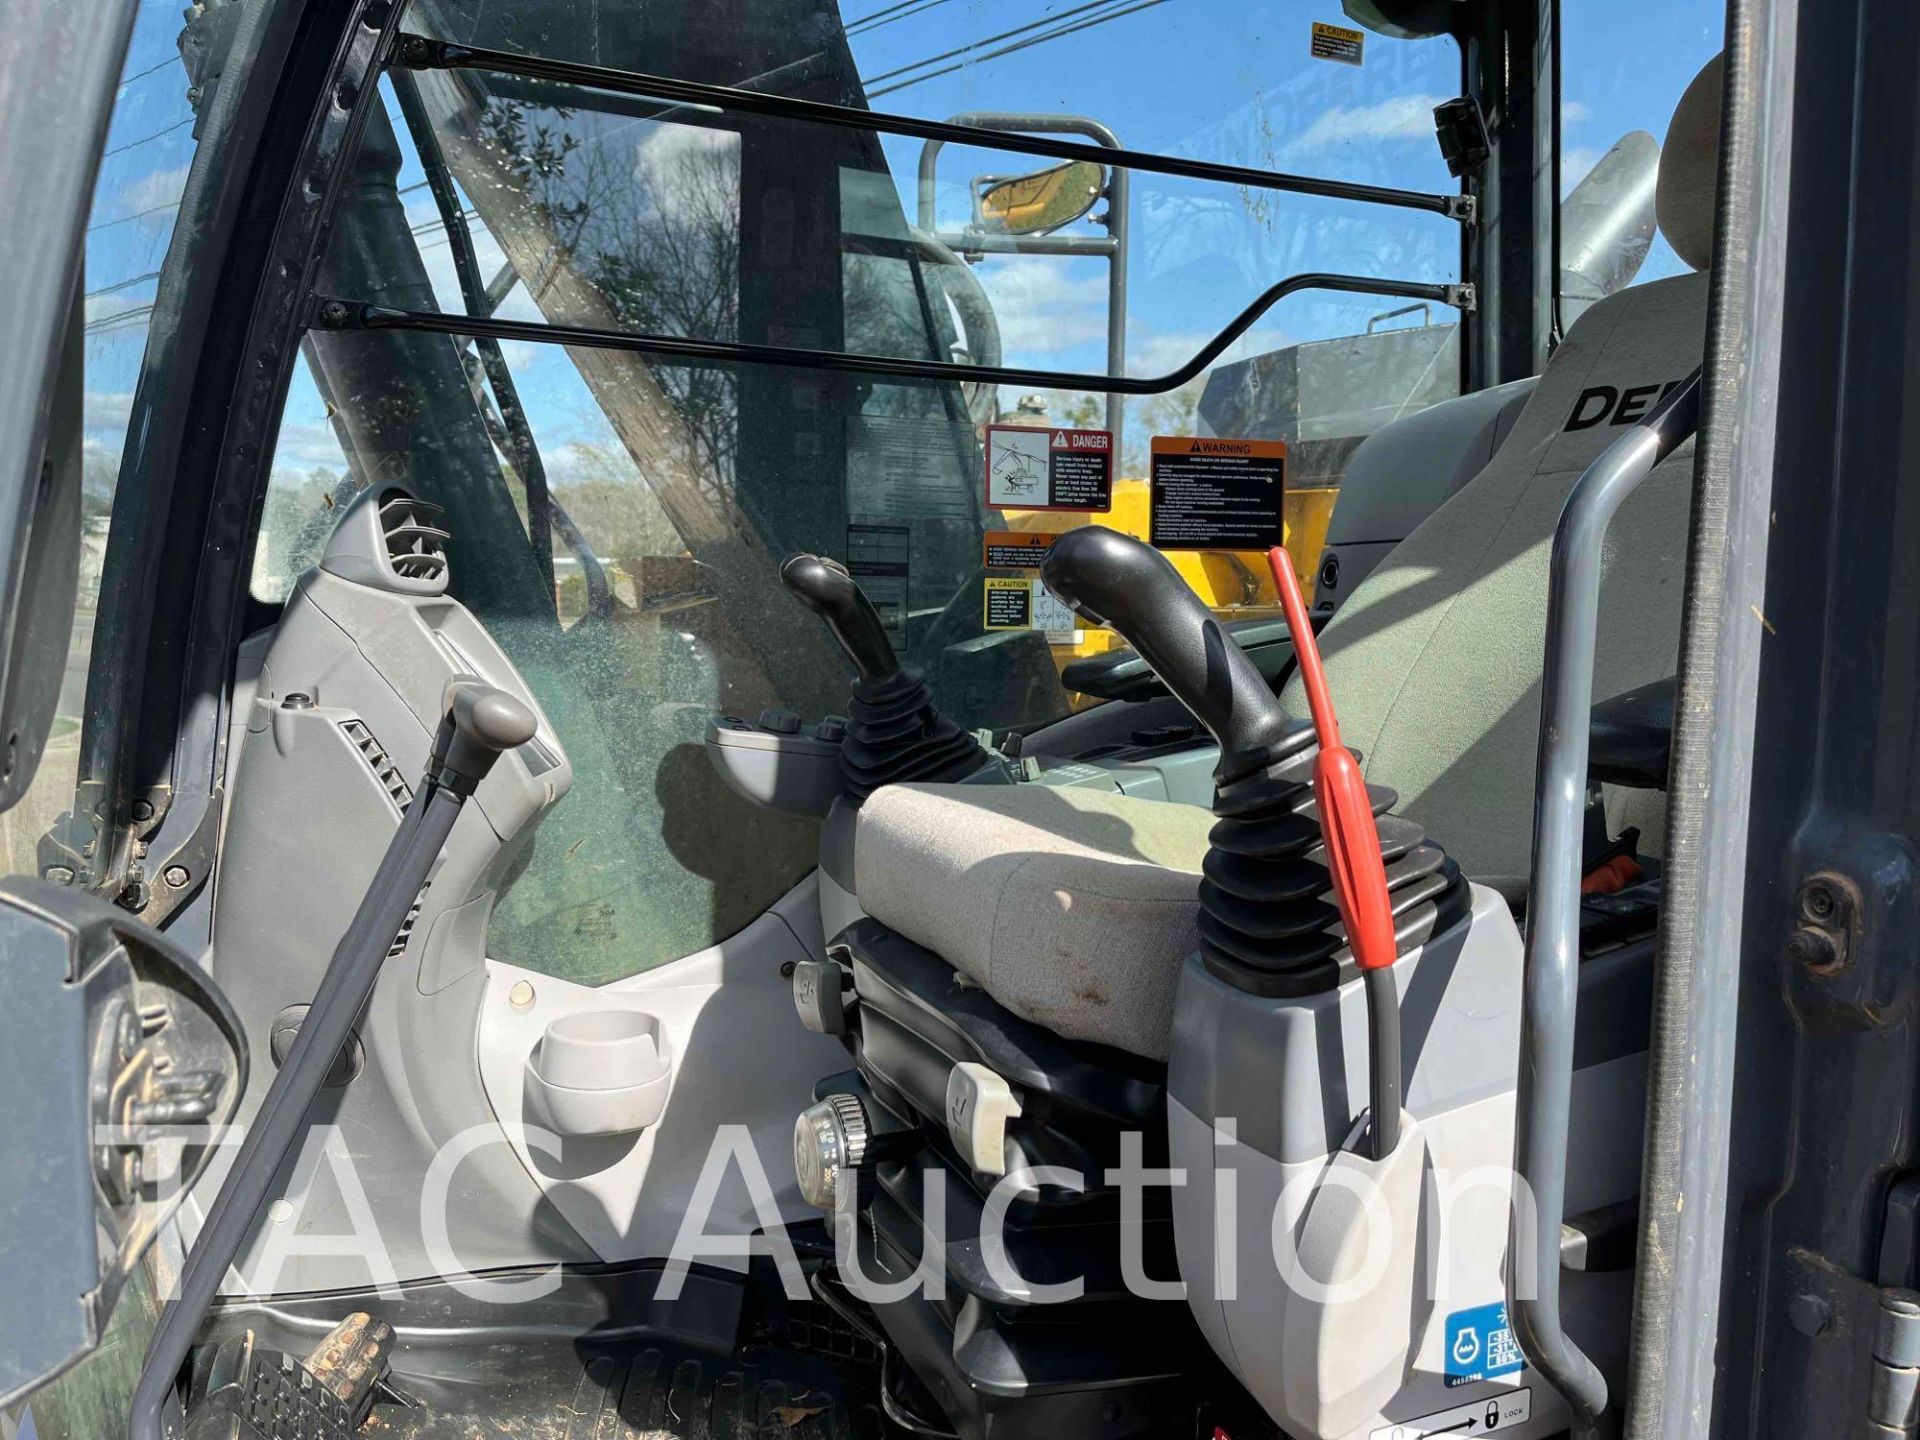 2019 John Deere 135G Excavator - Image 13 of 29